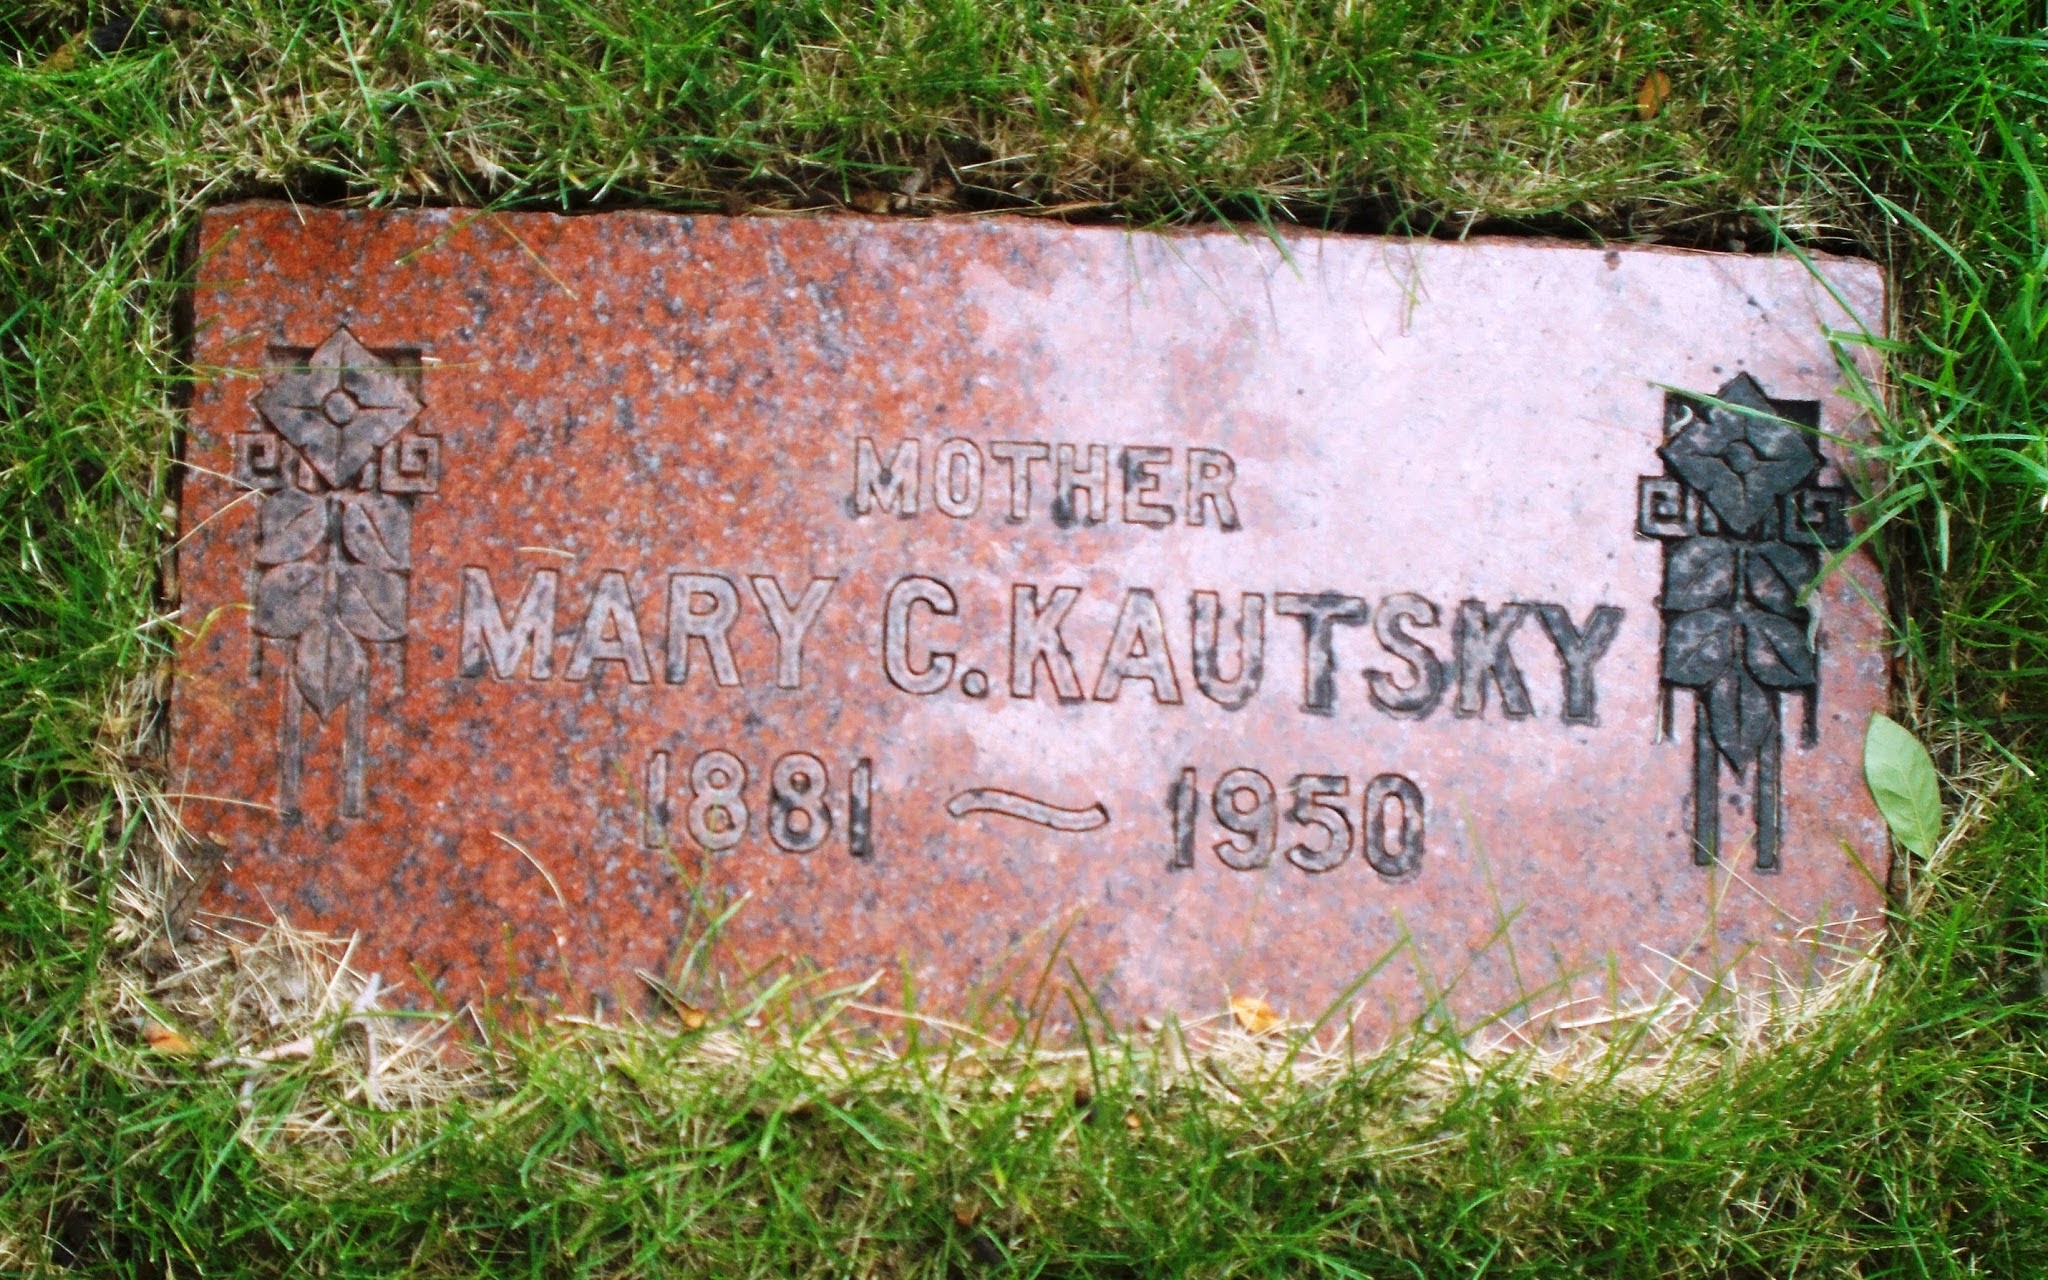 Mary C Kautsky